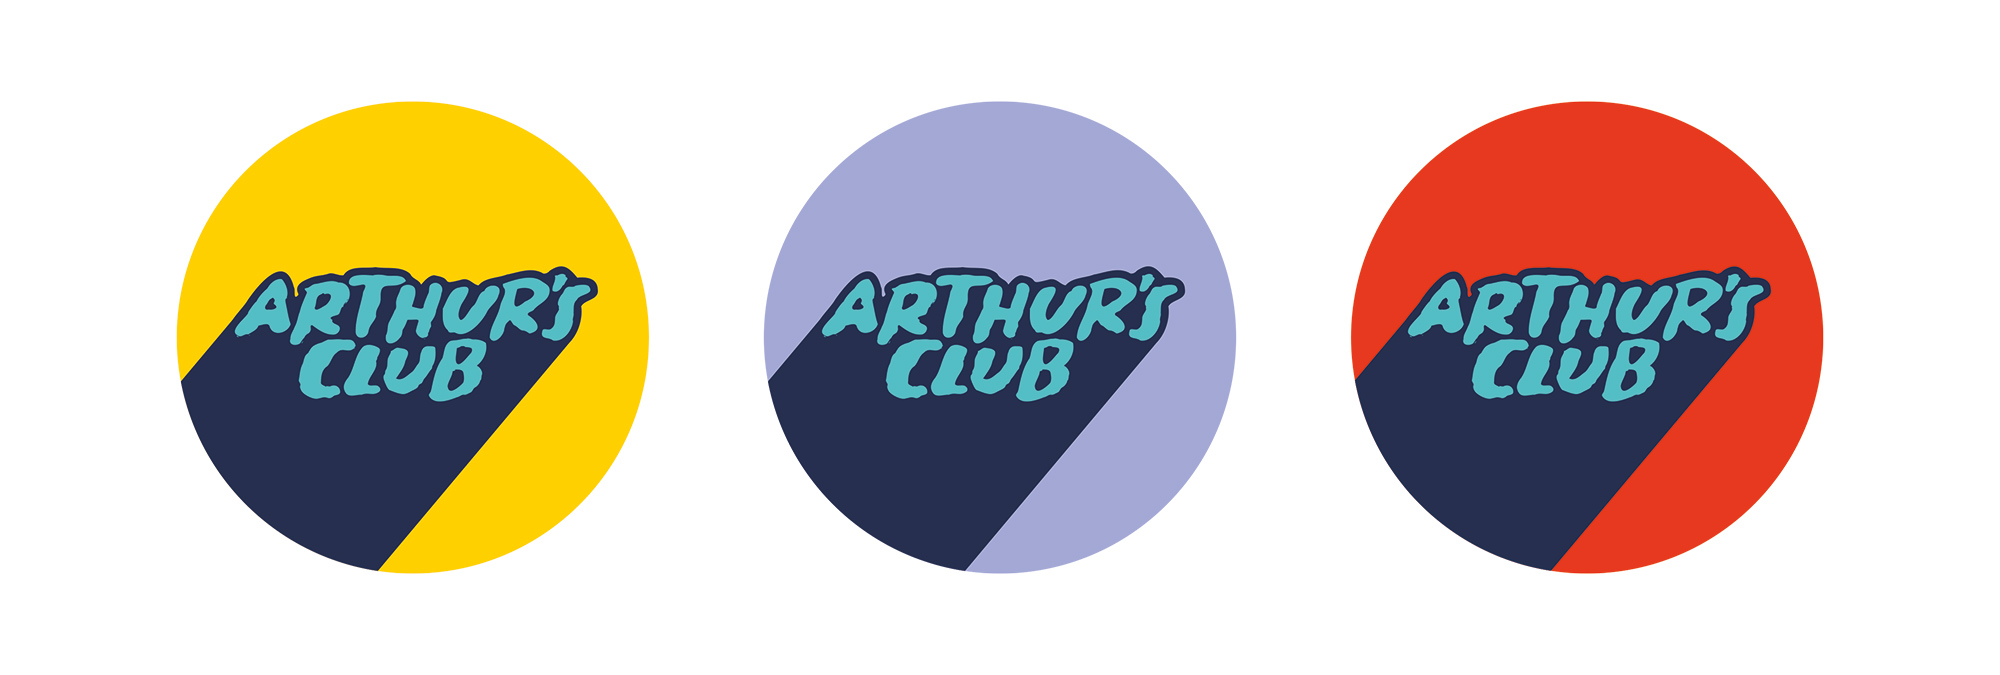 Arthur's Club